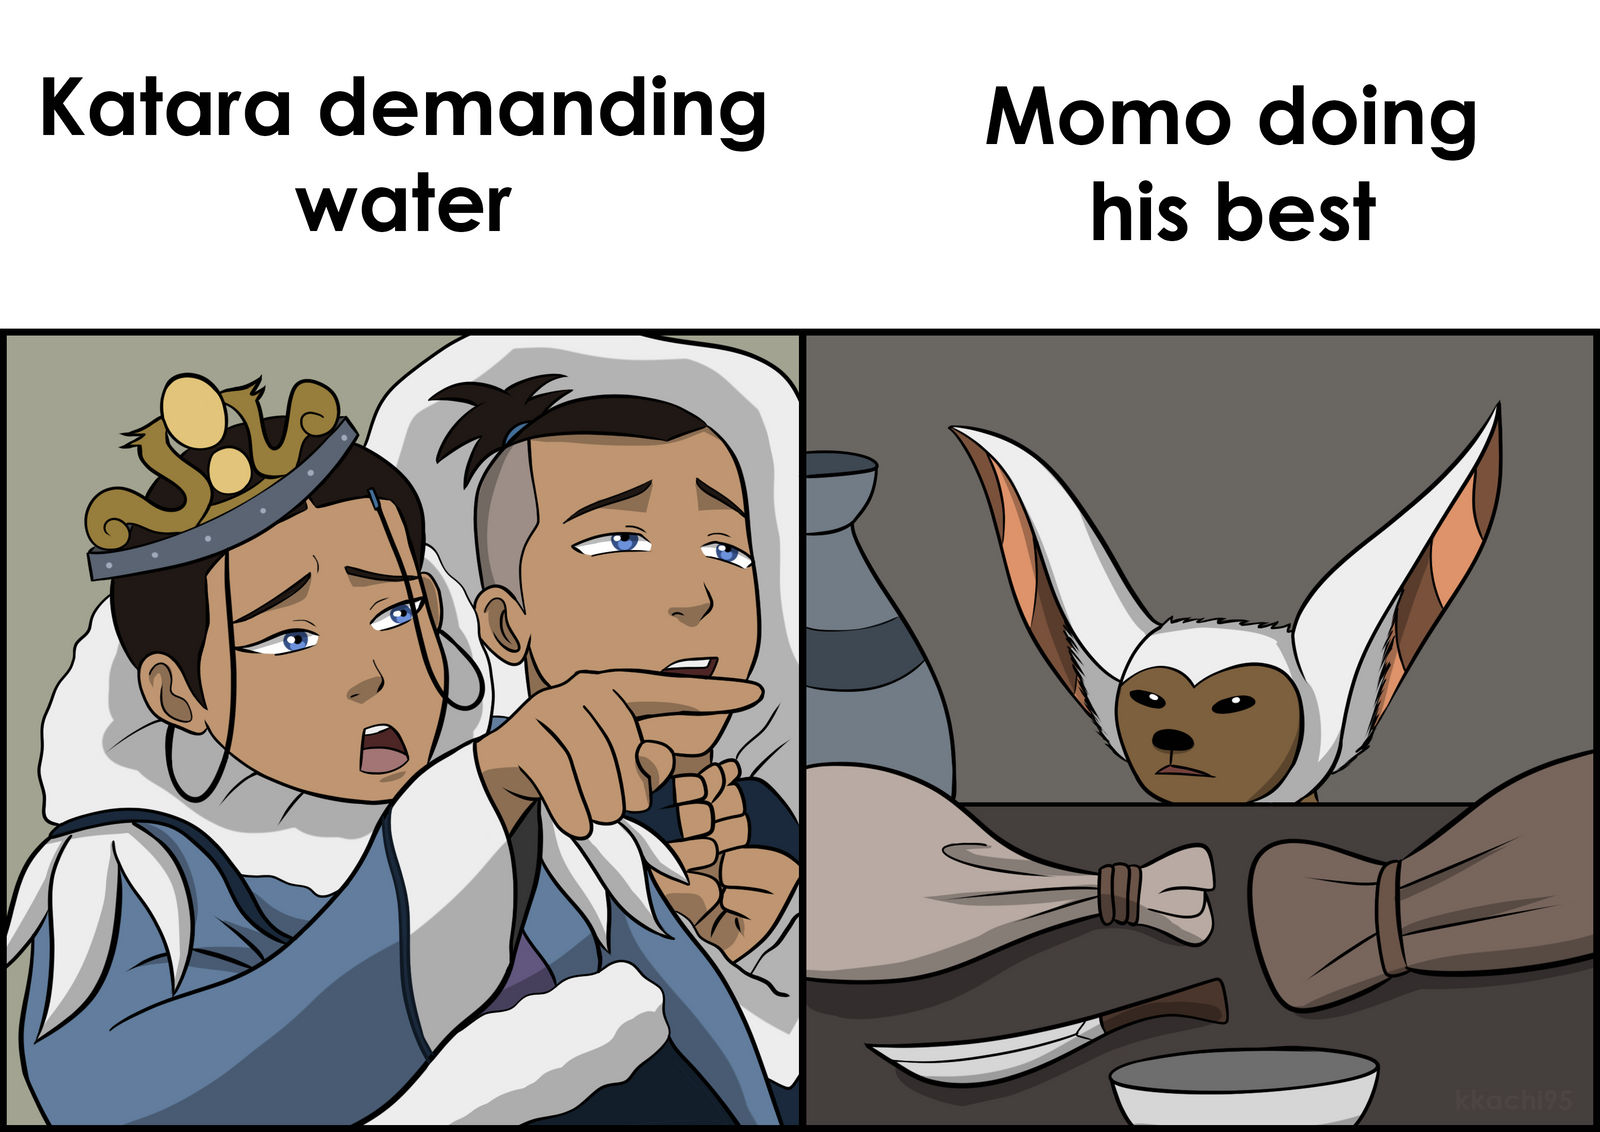 Momo Avatar memes - Momo là một nhân vật khách mời trong thế giới Avatar và được yêu thích không kém ông bố Aang. Hãy cùng nhau thưởng thức những hình ảnh meme đầy sáng tạo và hài hước liên quan đến cô bé Momo nhé.